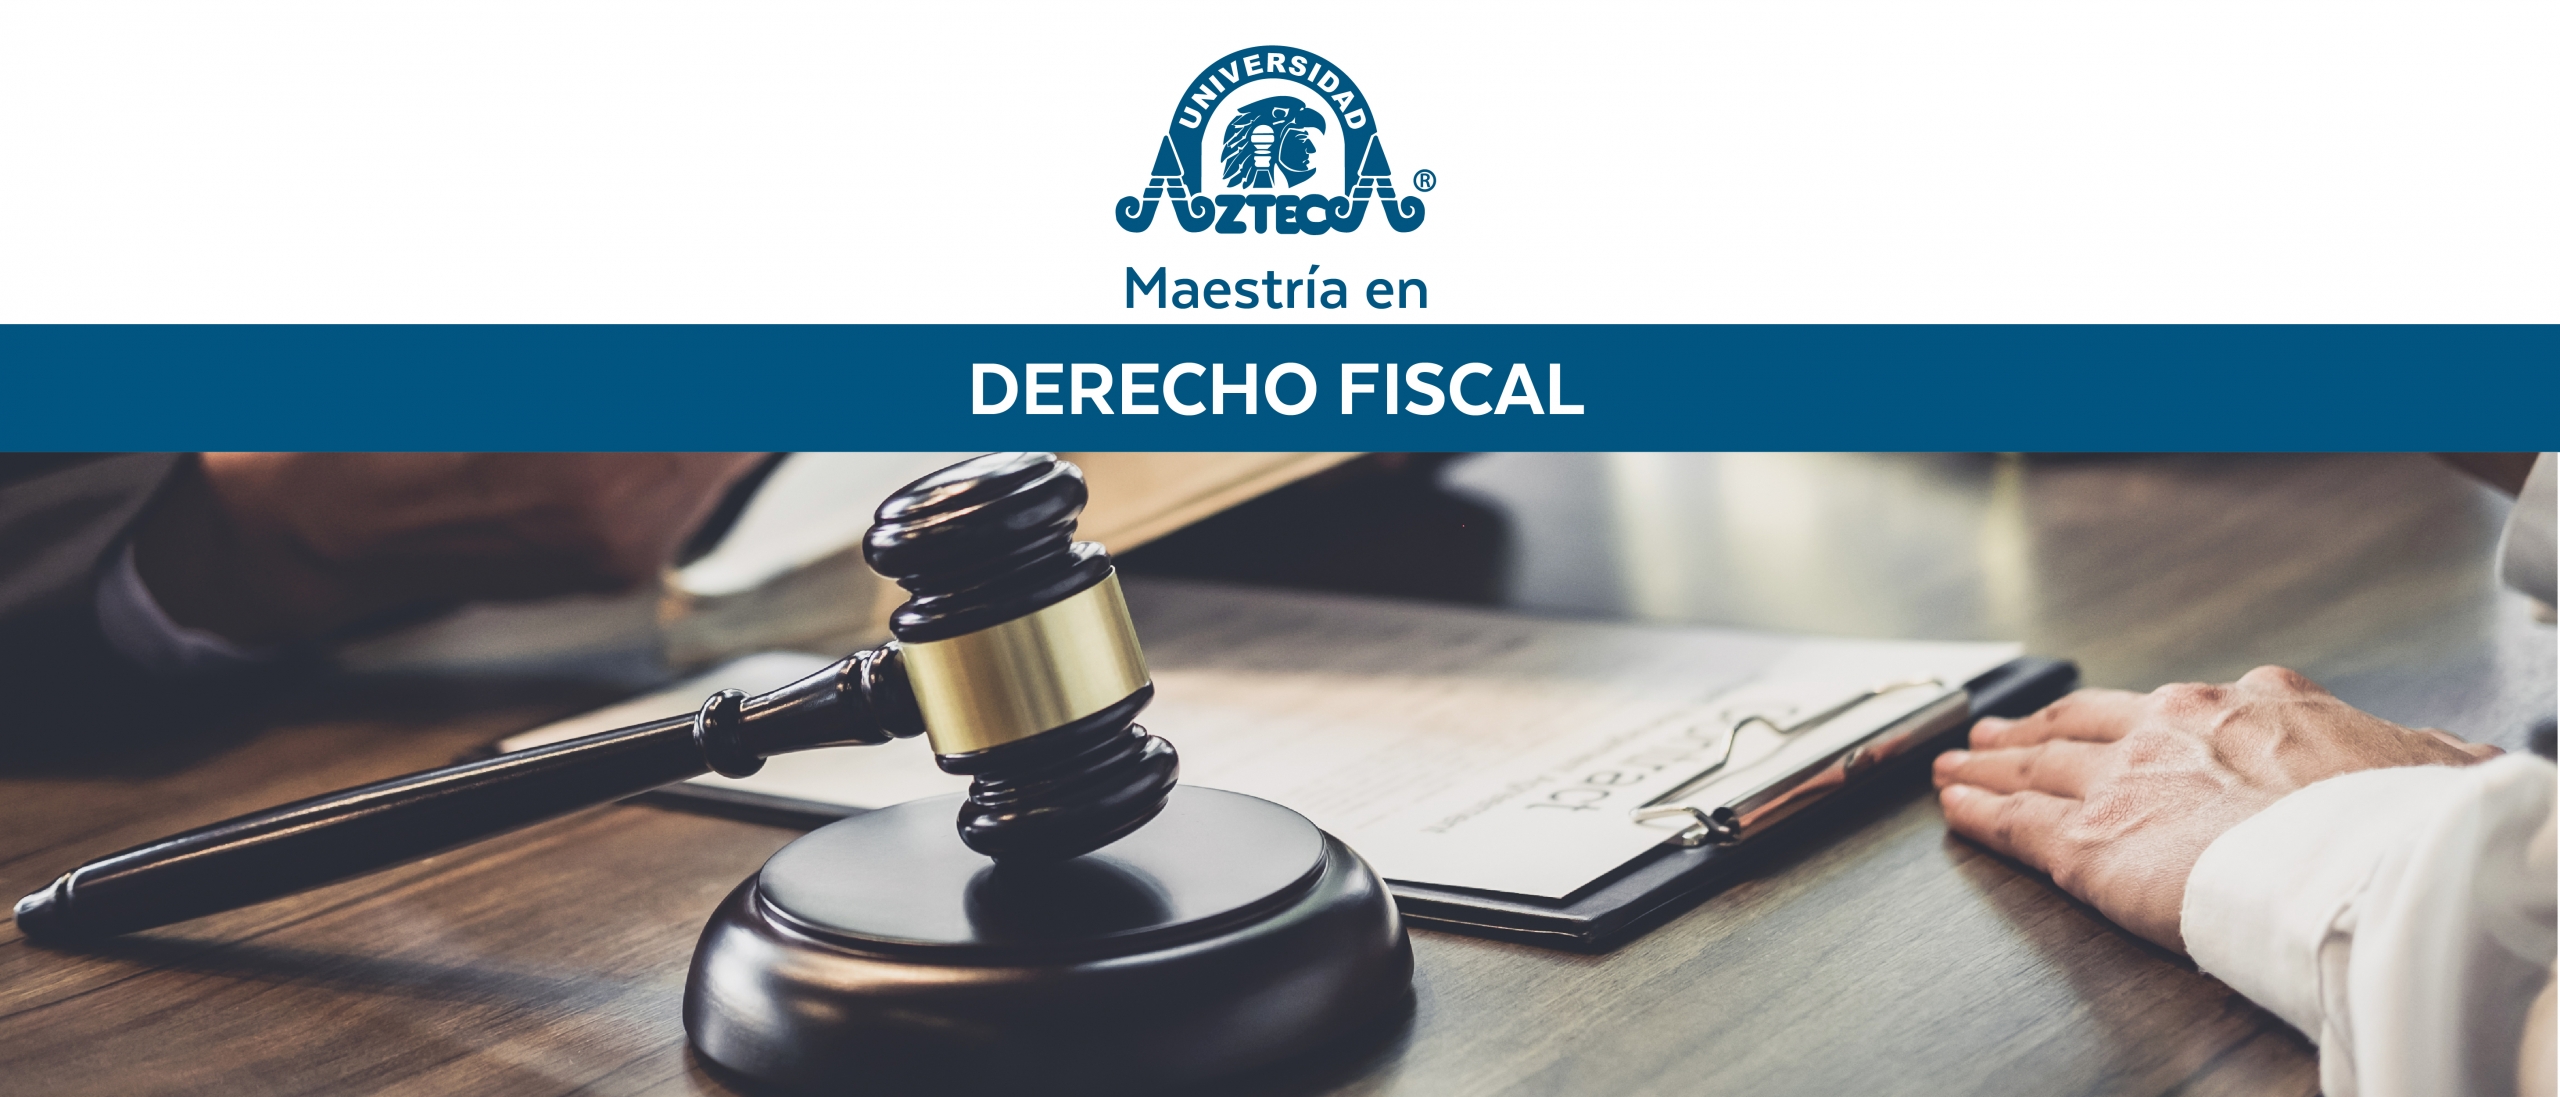 Maestría en Derecho Fiscal – Universidad Azteca